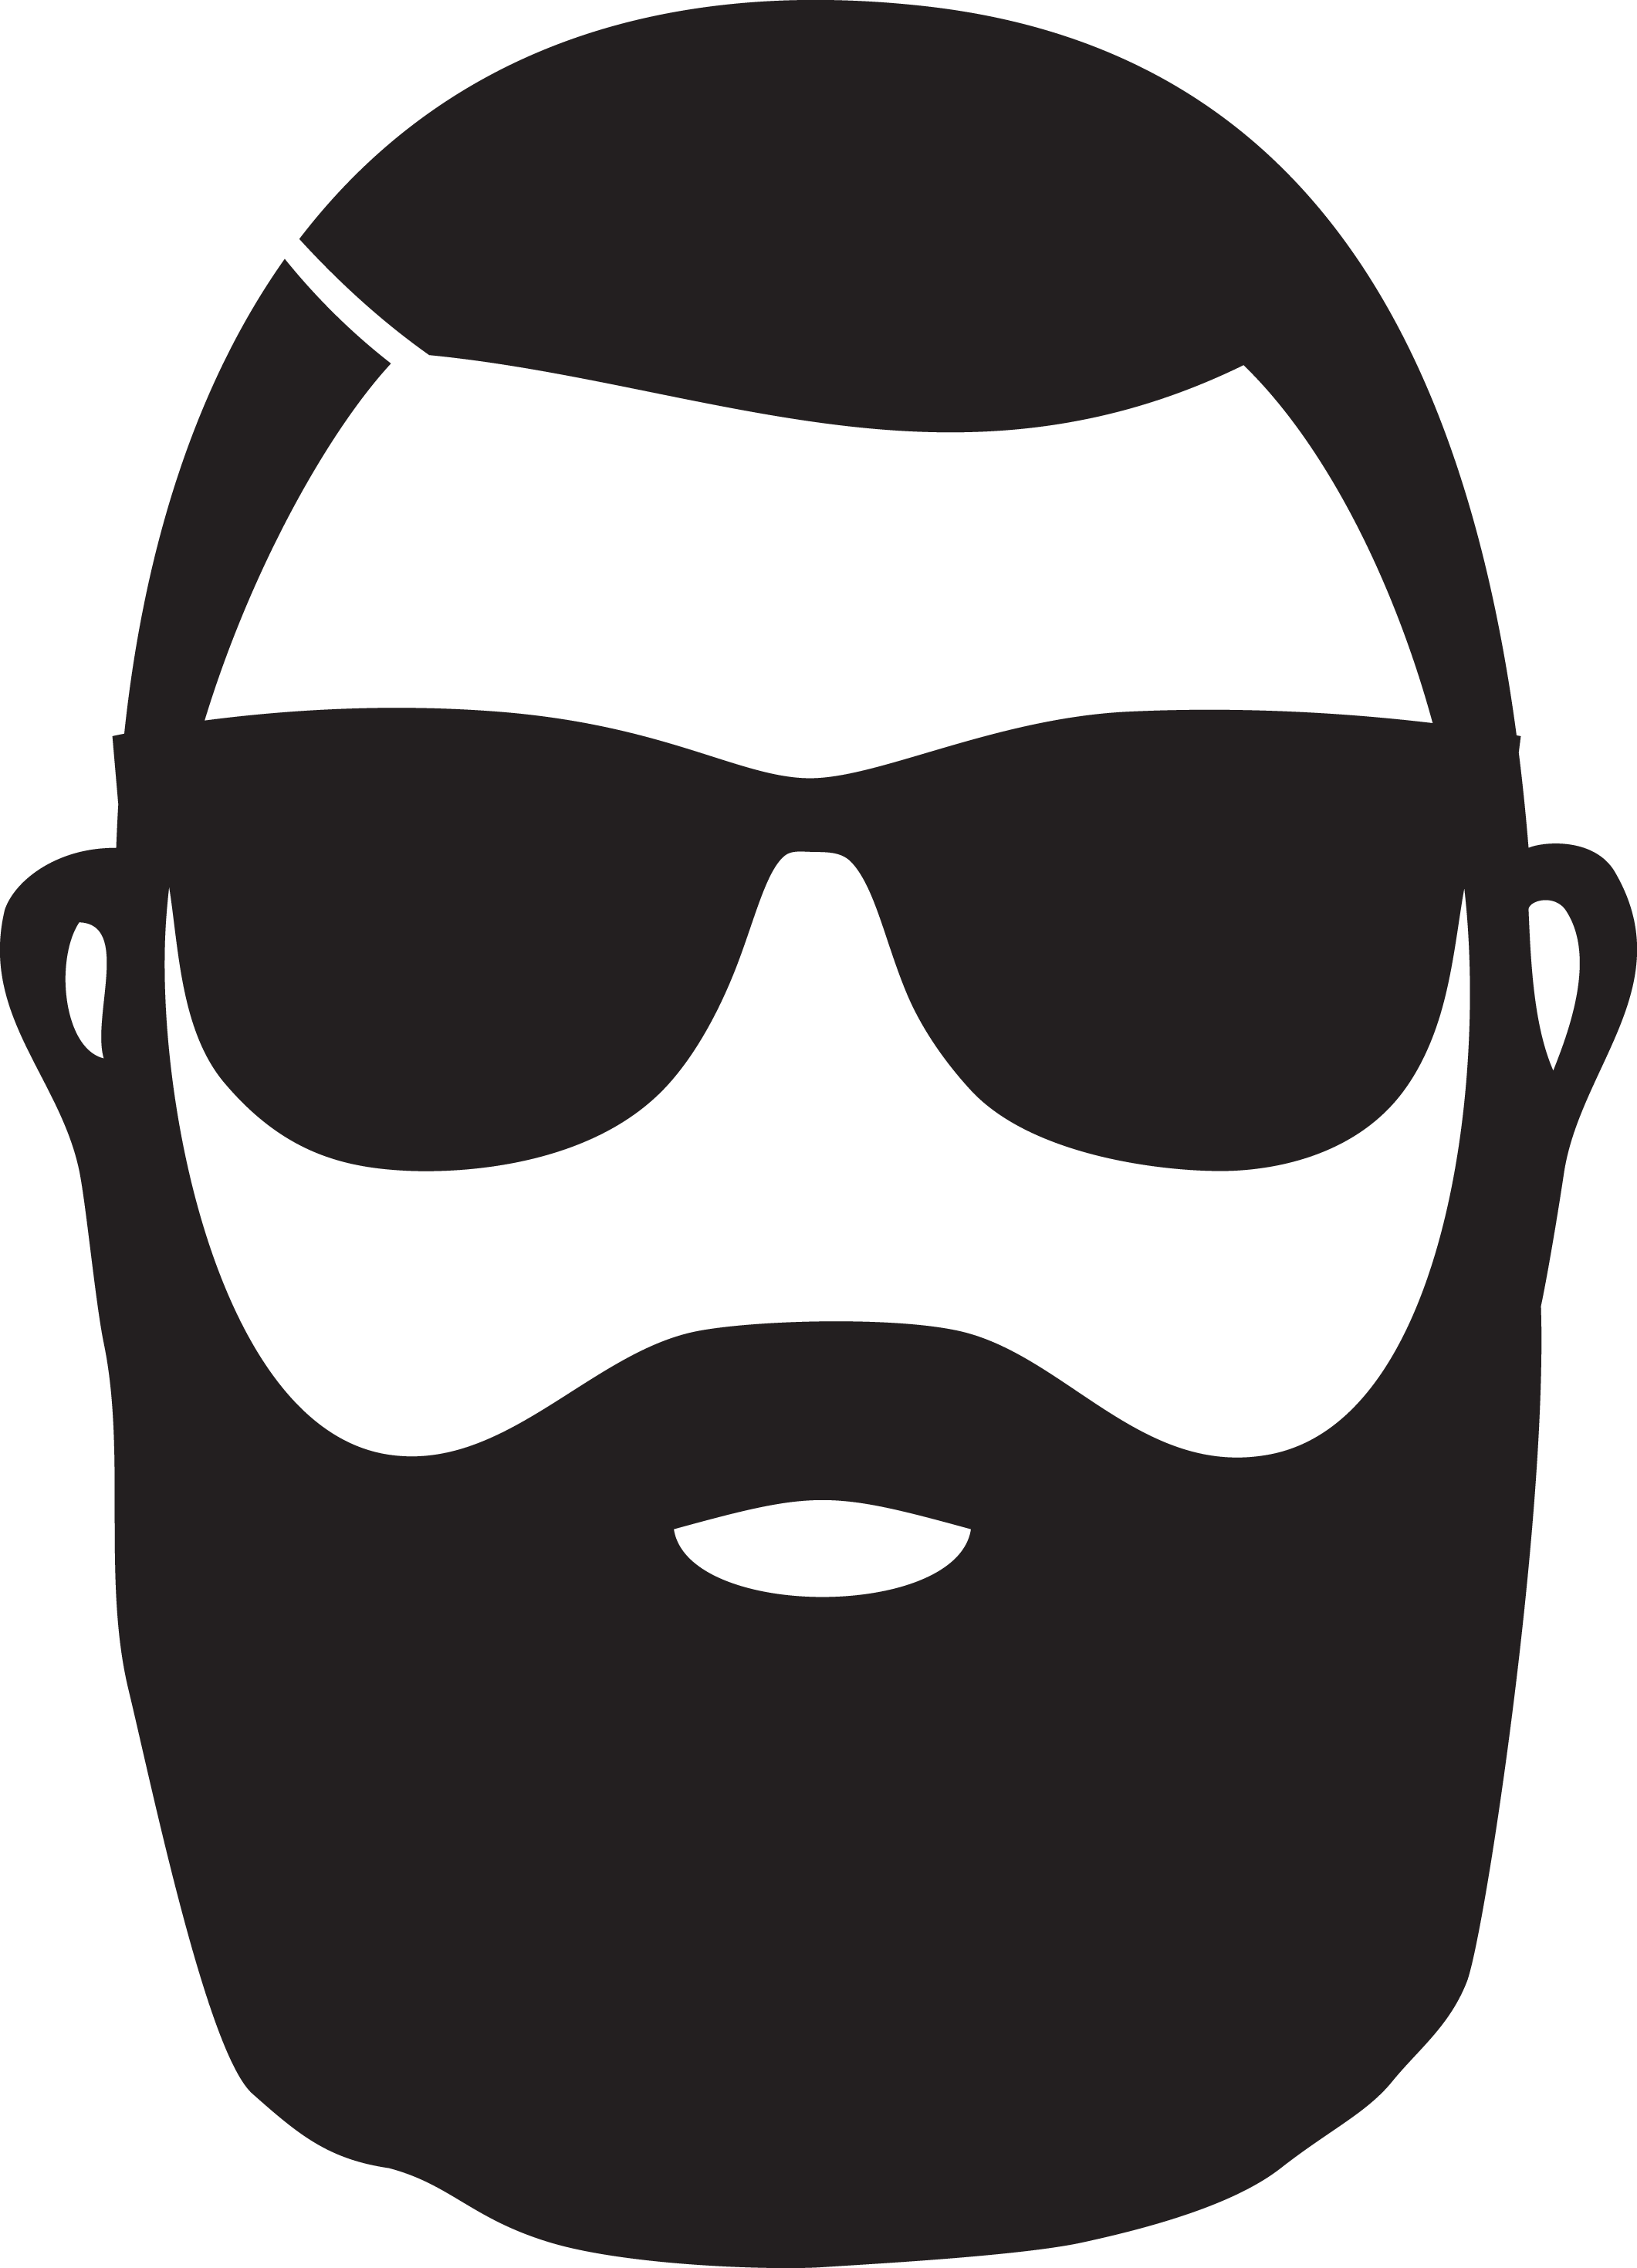 Stylized Beardand Sunglasses Icon